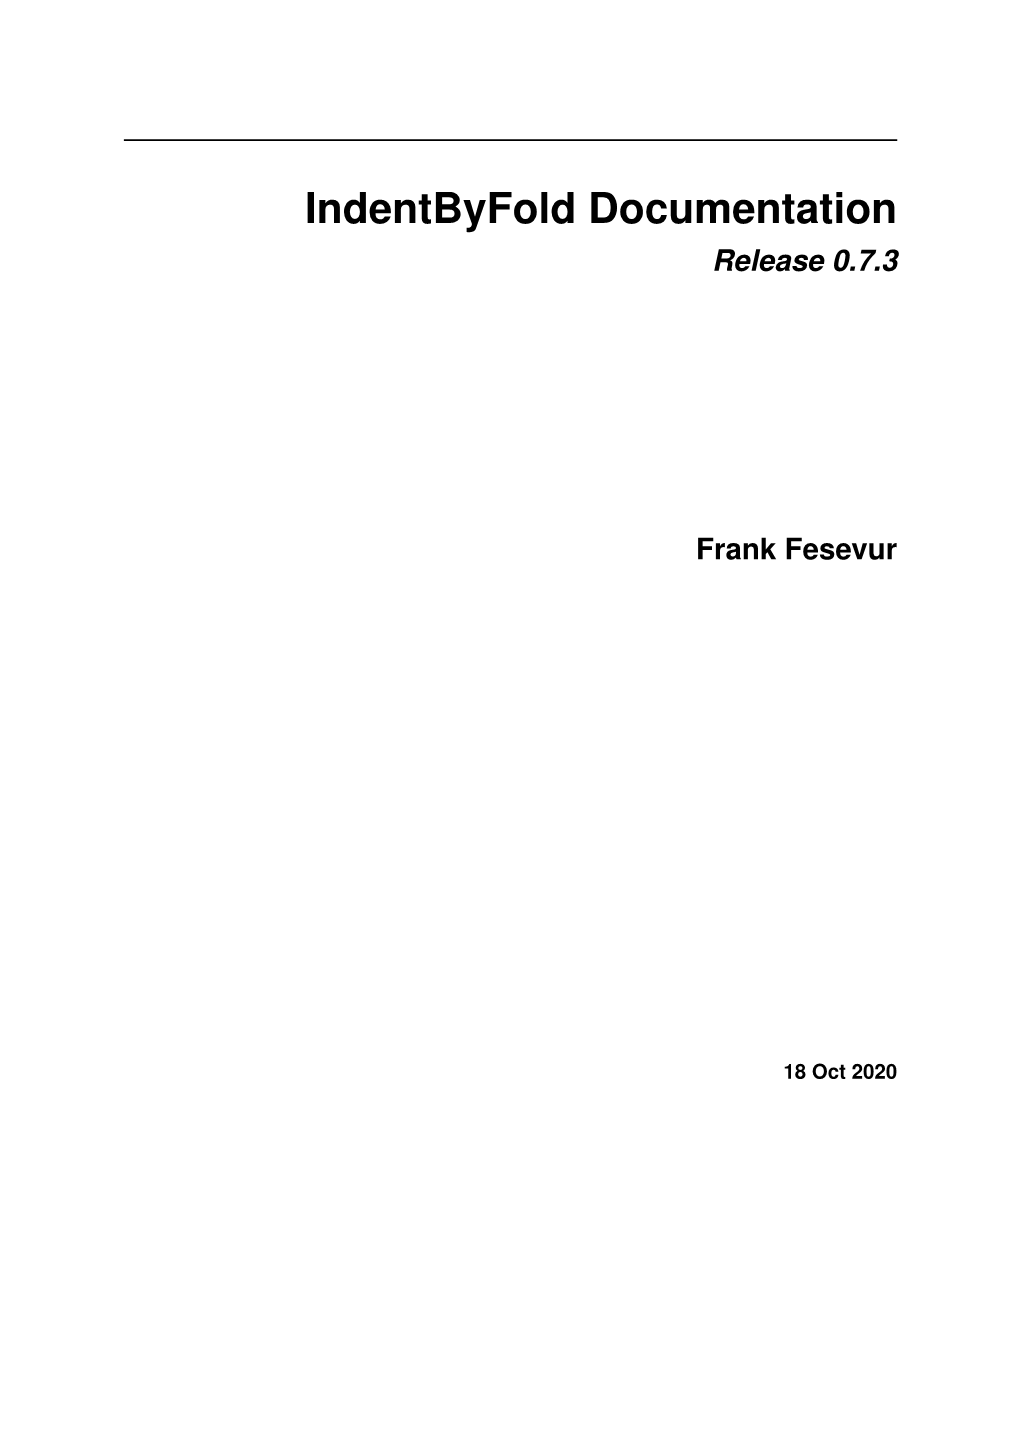 Release 0.7.3 Frank Fesevur